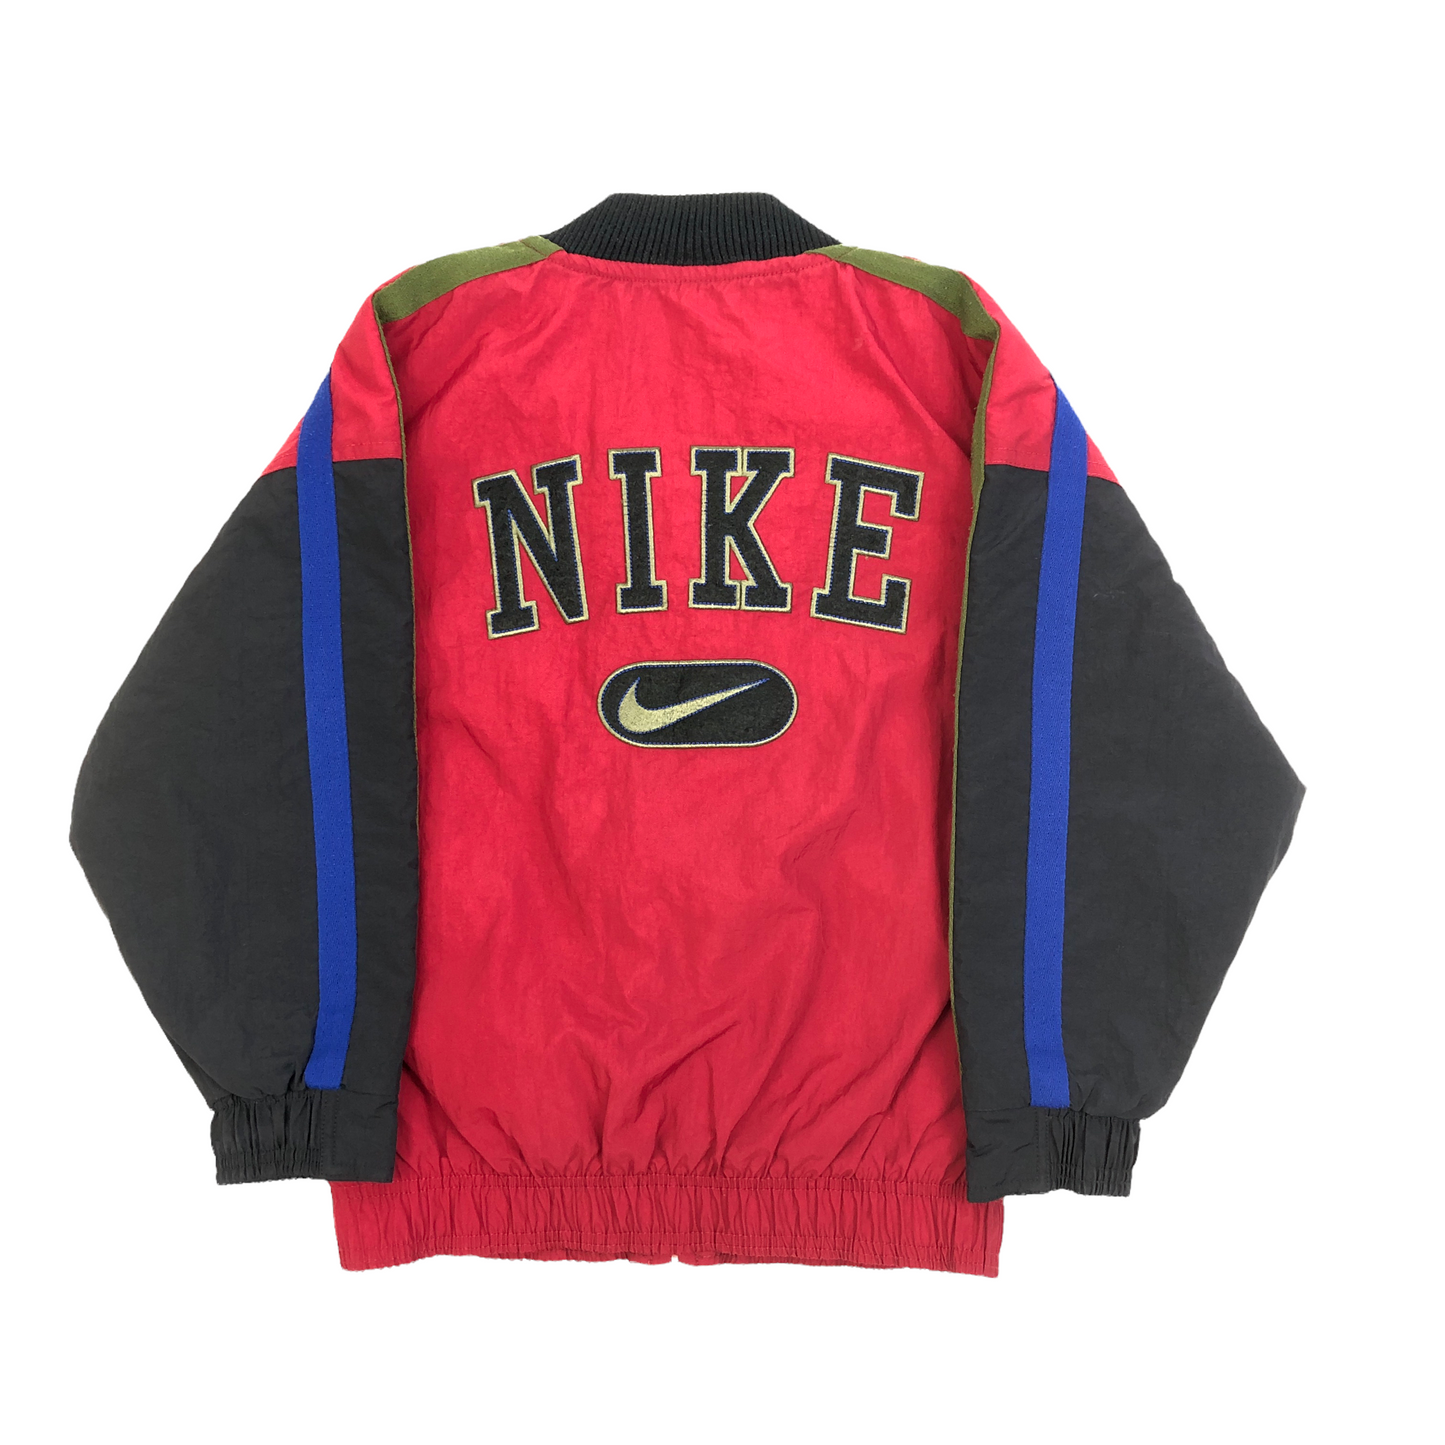 Vintage 90's Nike Jacket (Age 8-10)